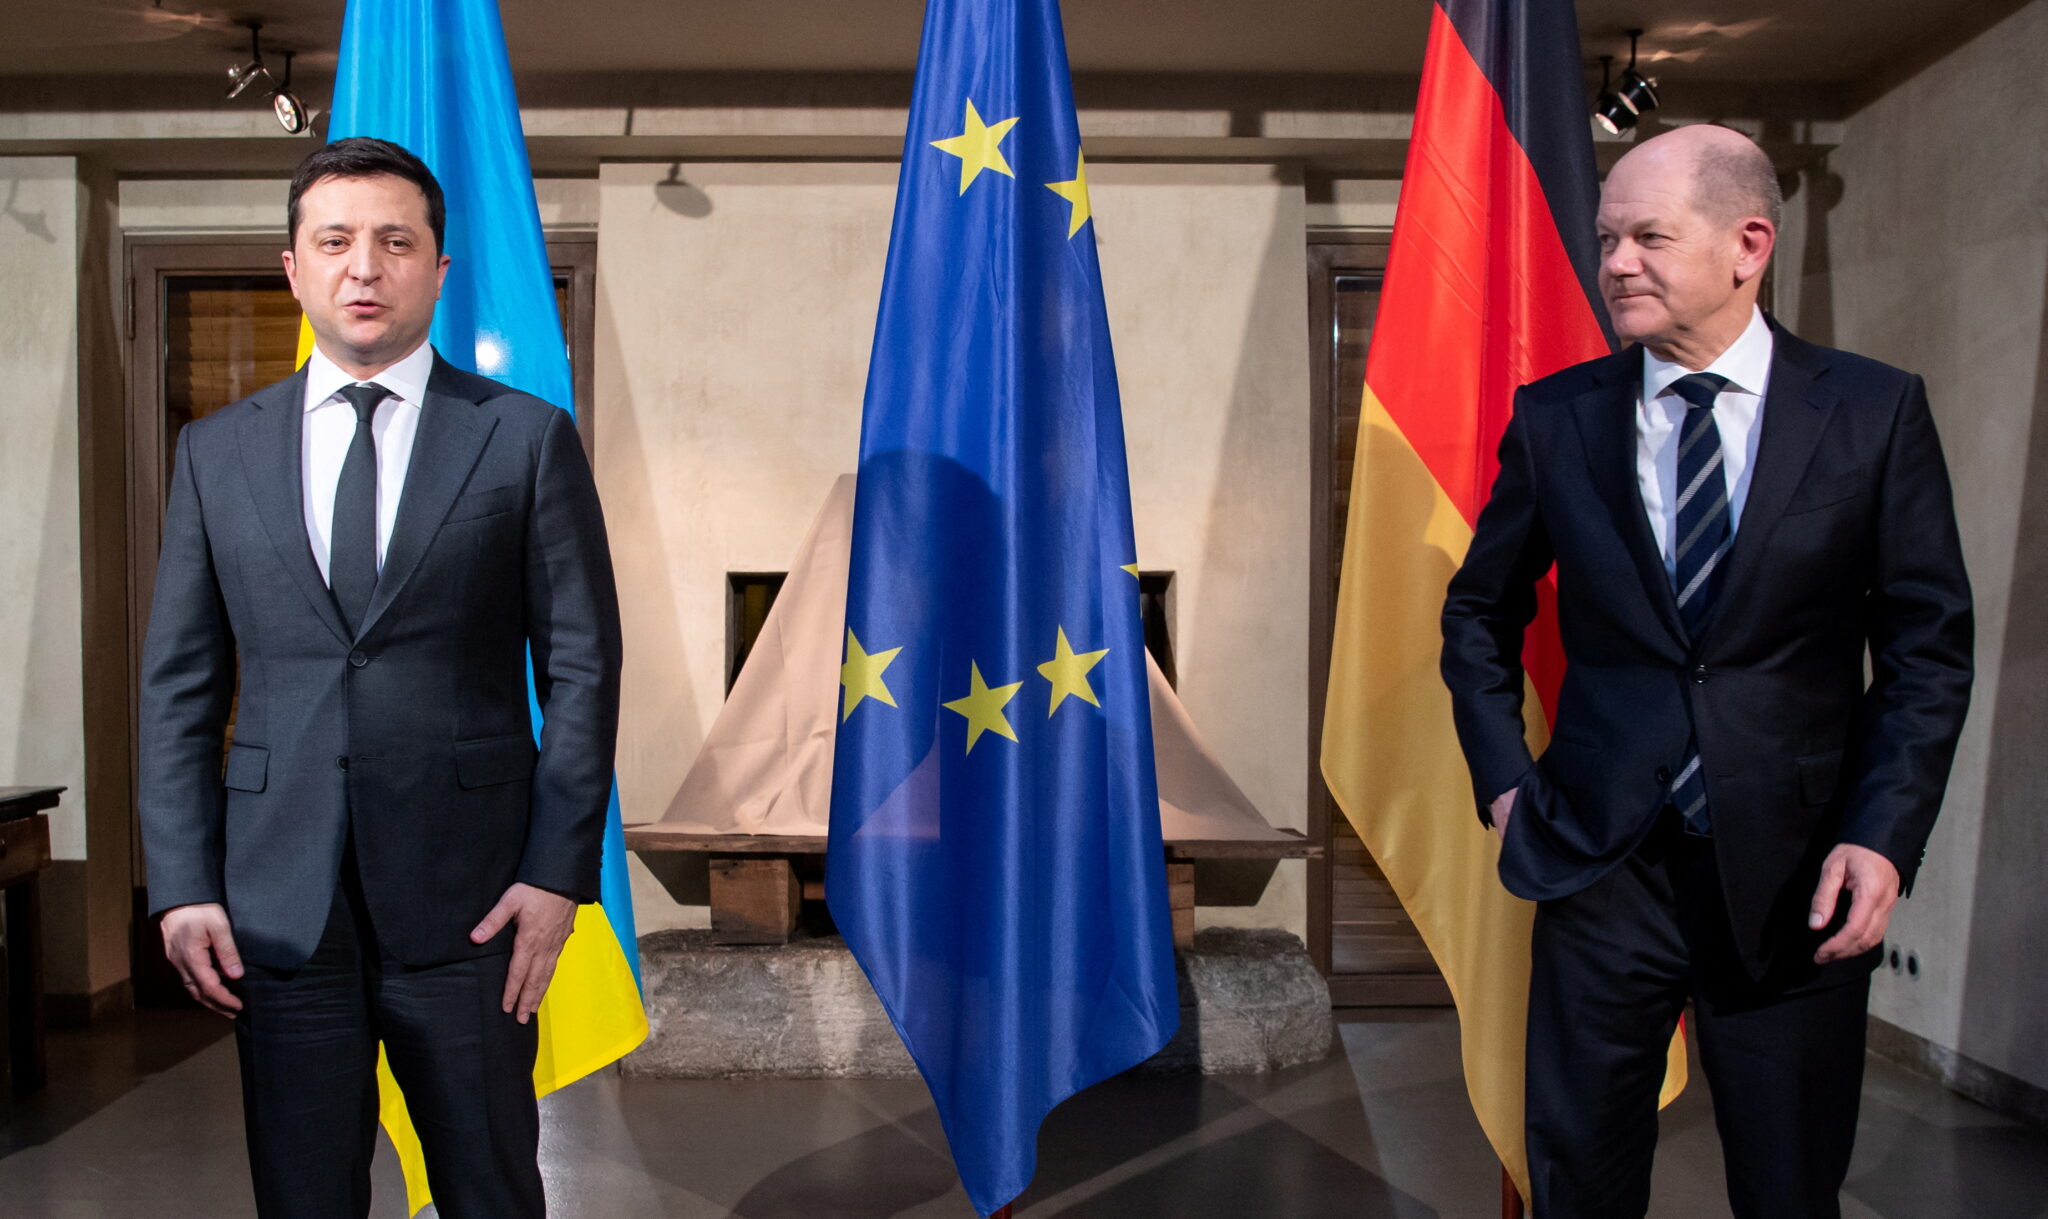 Владимир Зеленский и Олаф Шольц на Мюнхенской конференции по безопасности 19 февраля 2022 года. Фото Свен Хоппе/REUTERS/Scanpix/LETA.